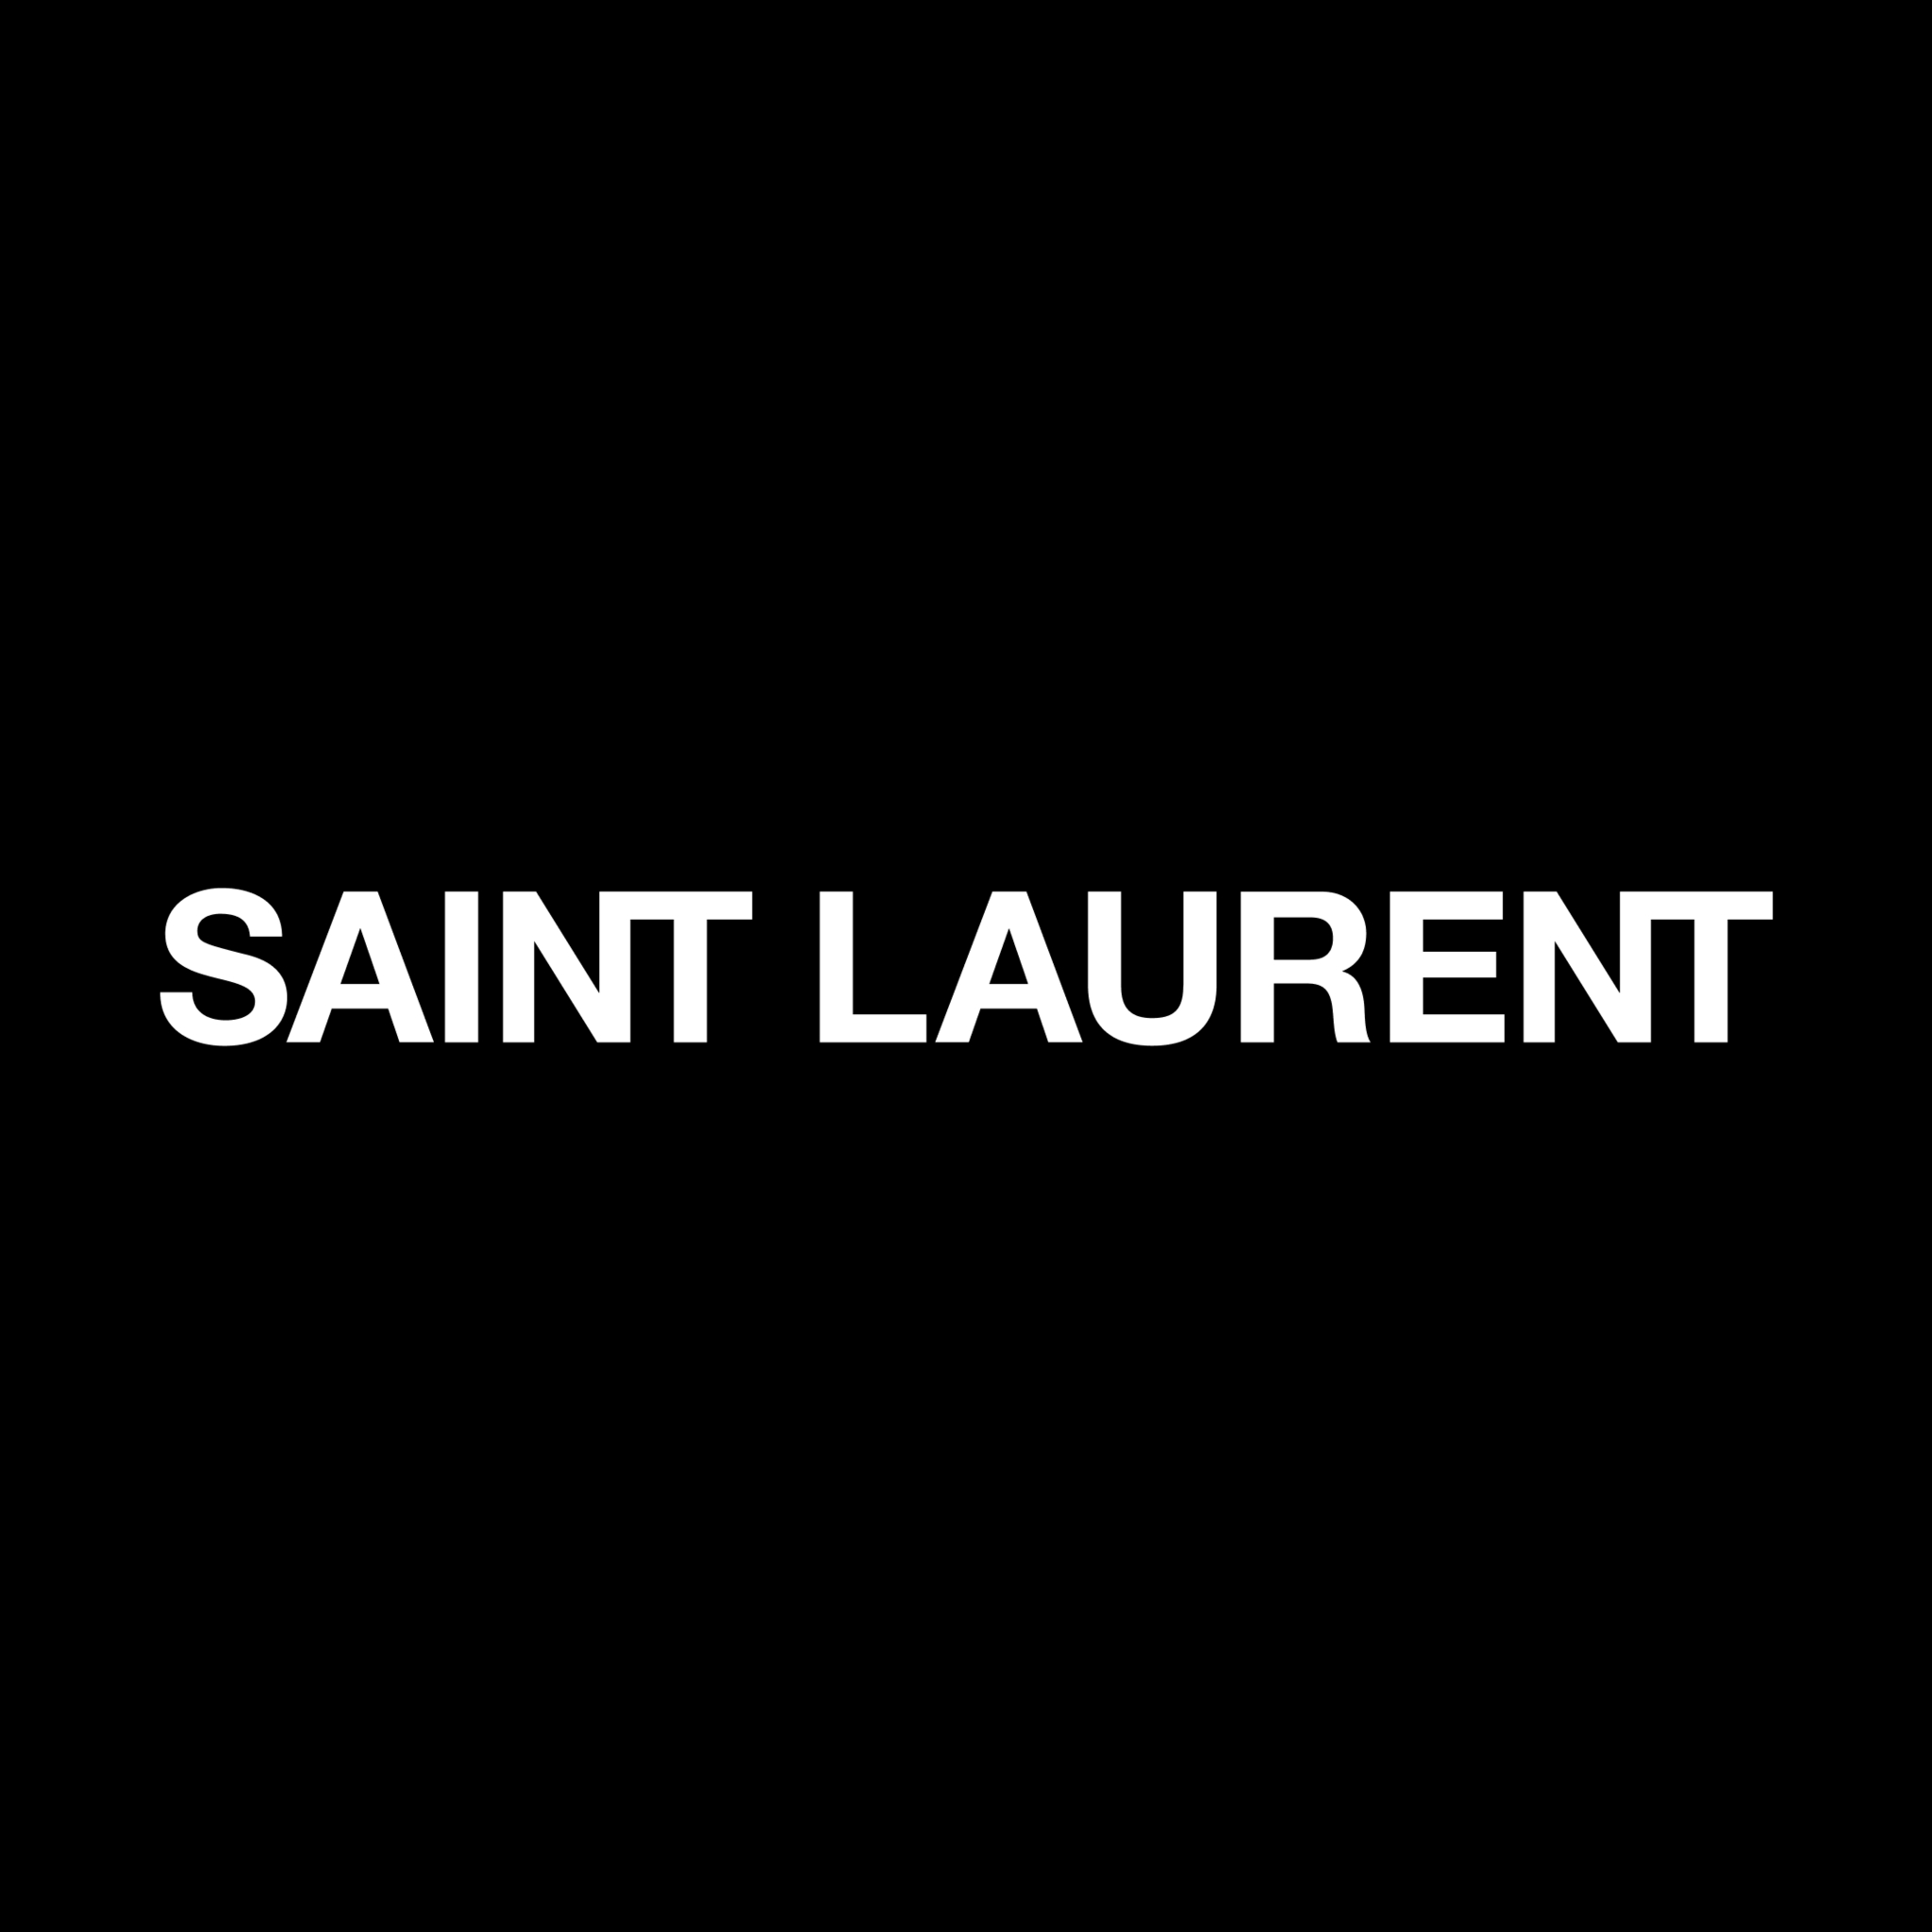 Saint Laurent - Clothing Manufacturers & Wholesalers